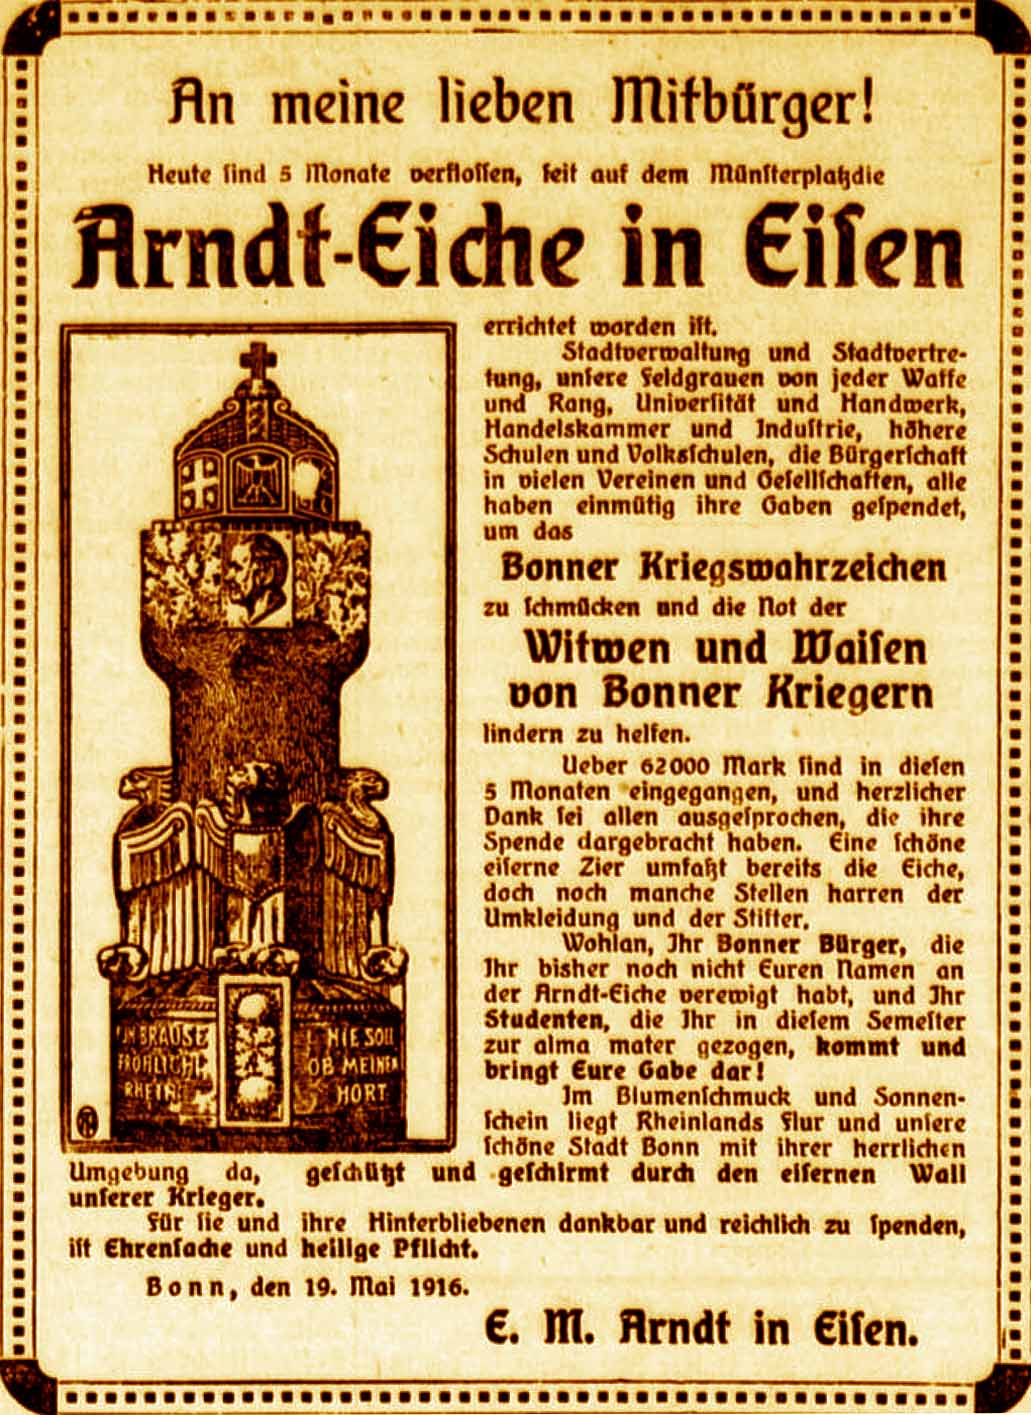 Anzeige im General-Anzeiger vom 19. Mai 1916